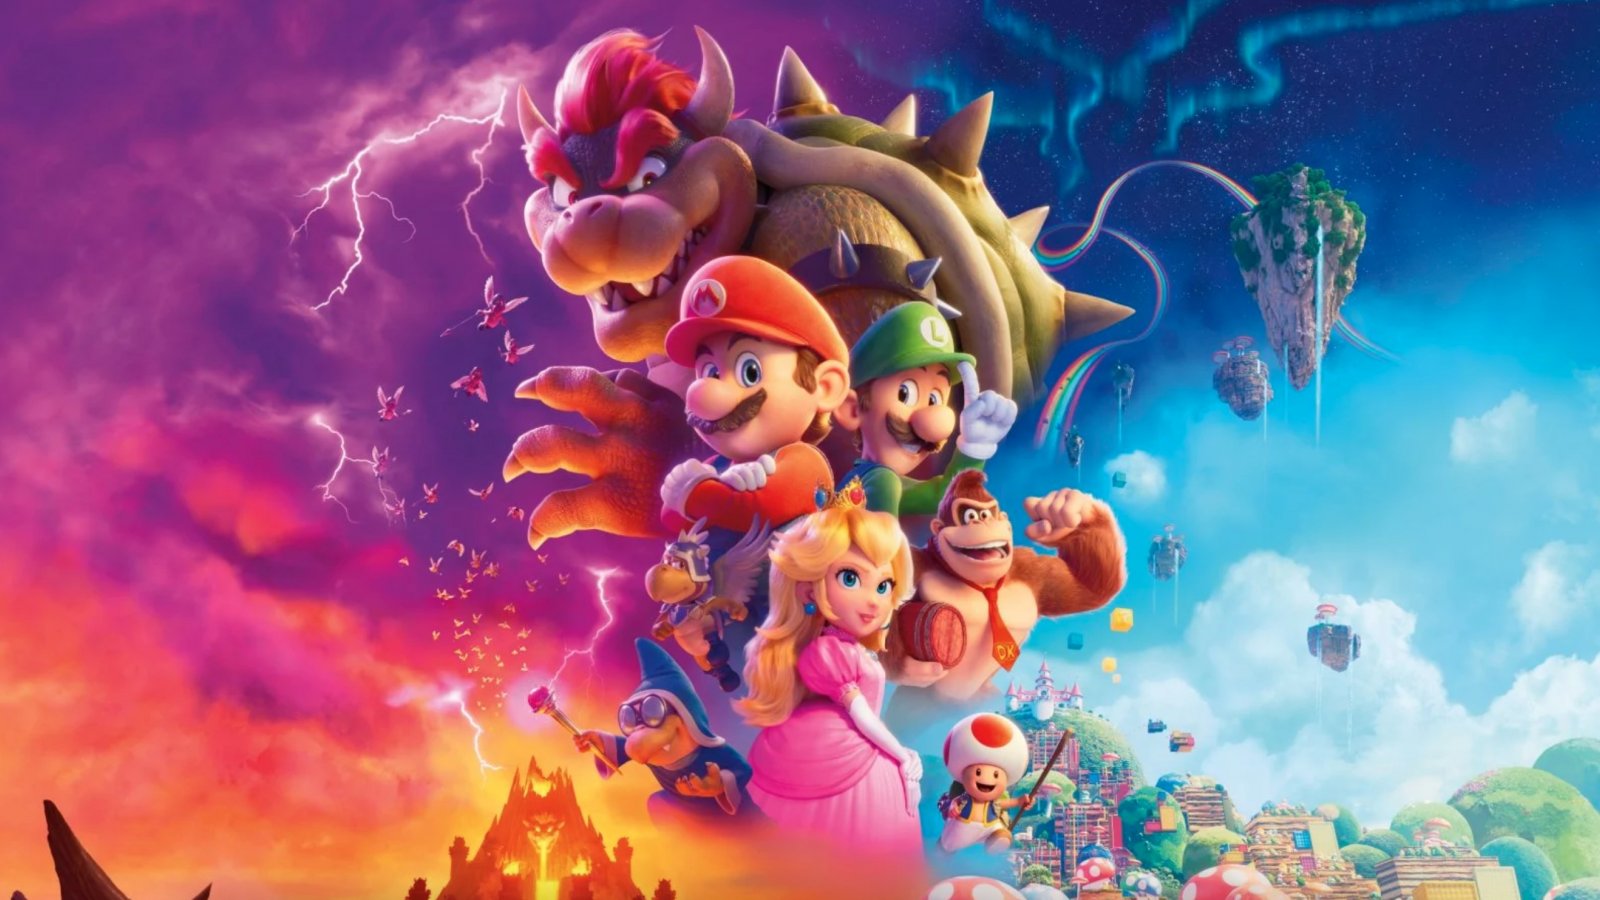 Super Mario Bros Il Film: le prime reazioni lodano il fan service e i numerosi cameo